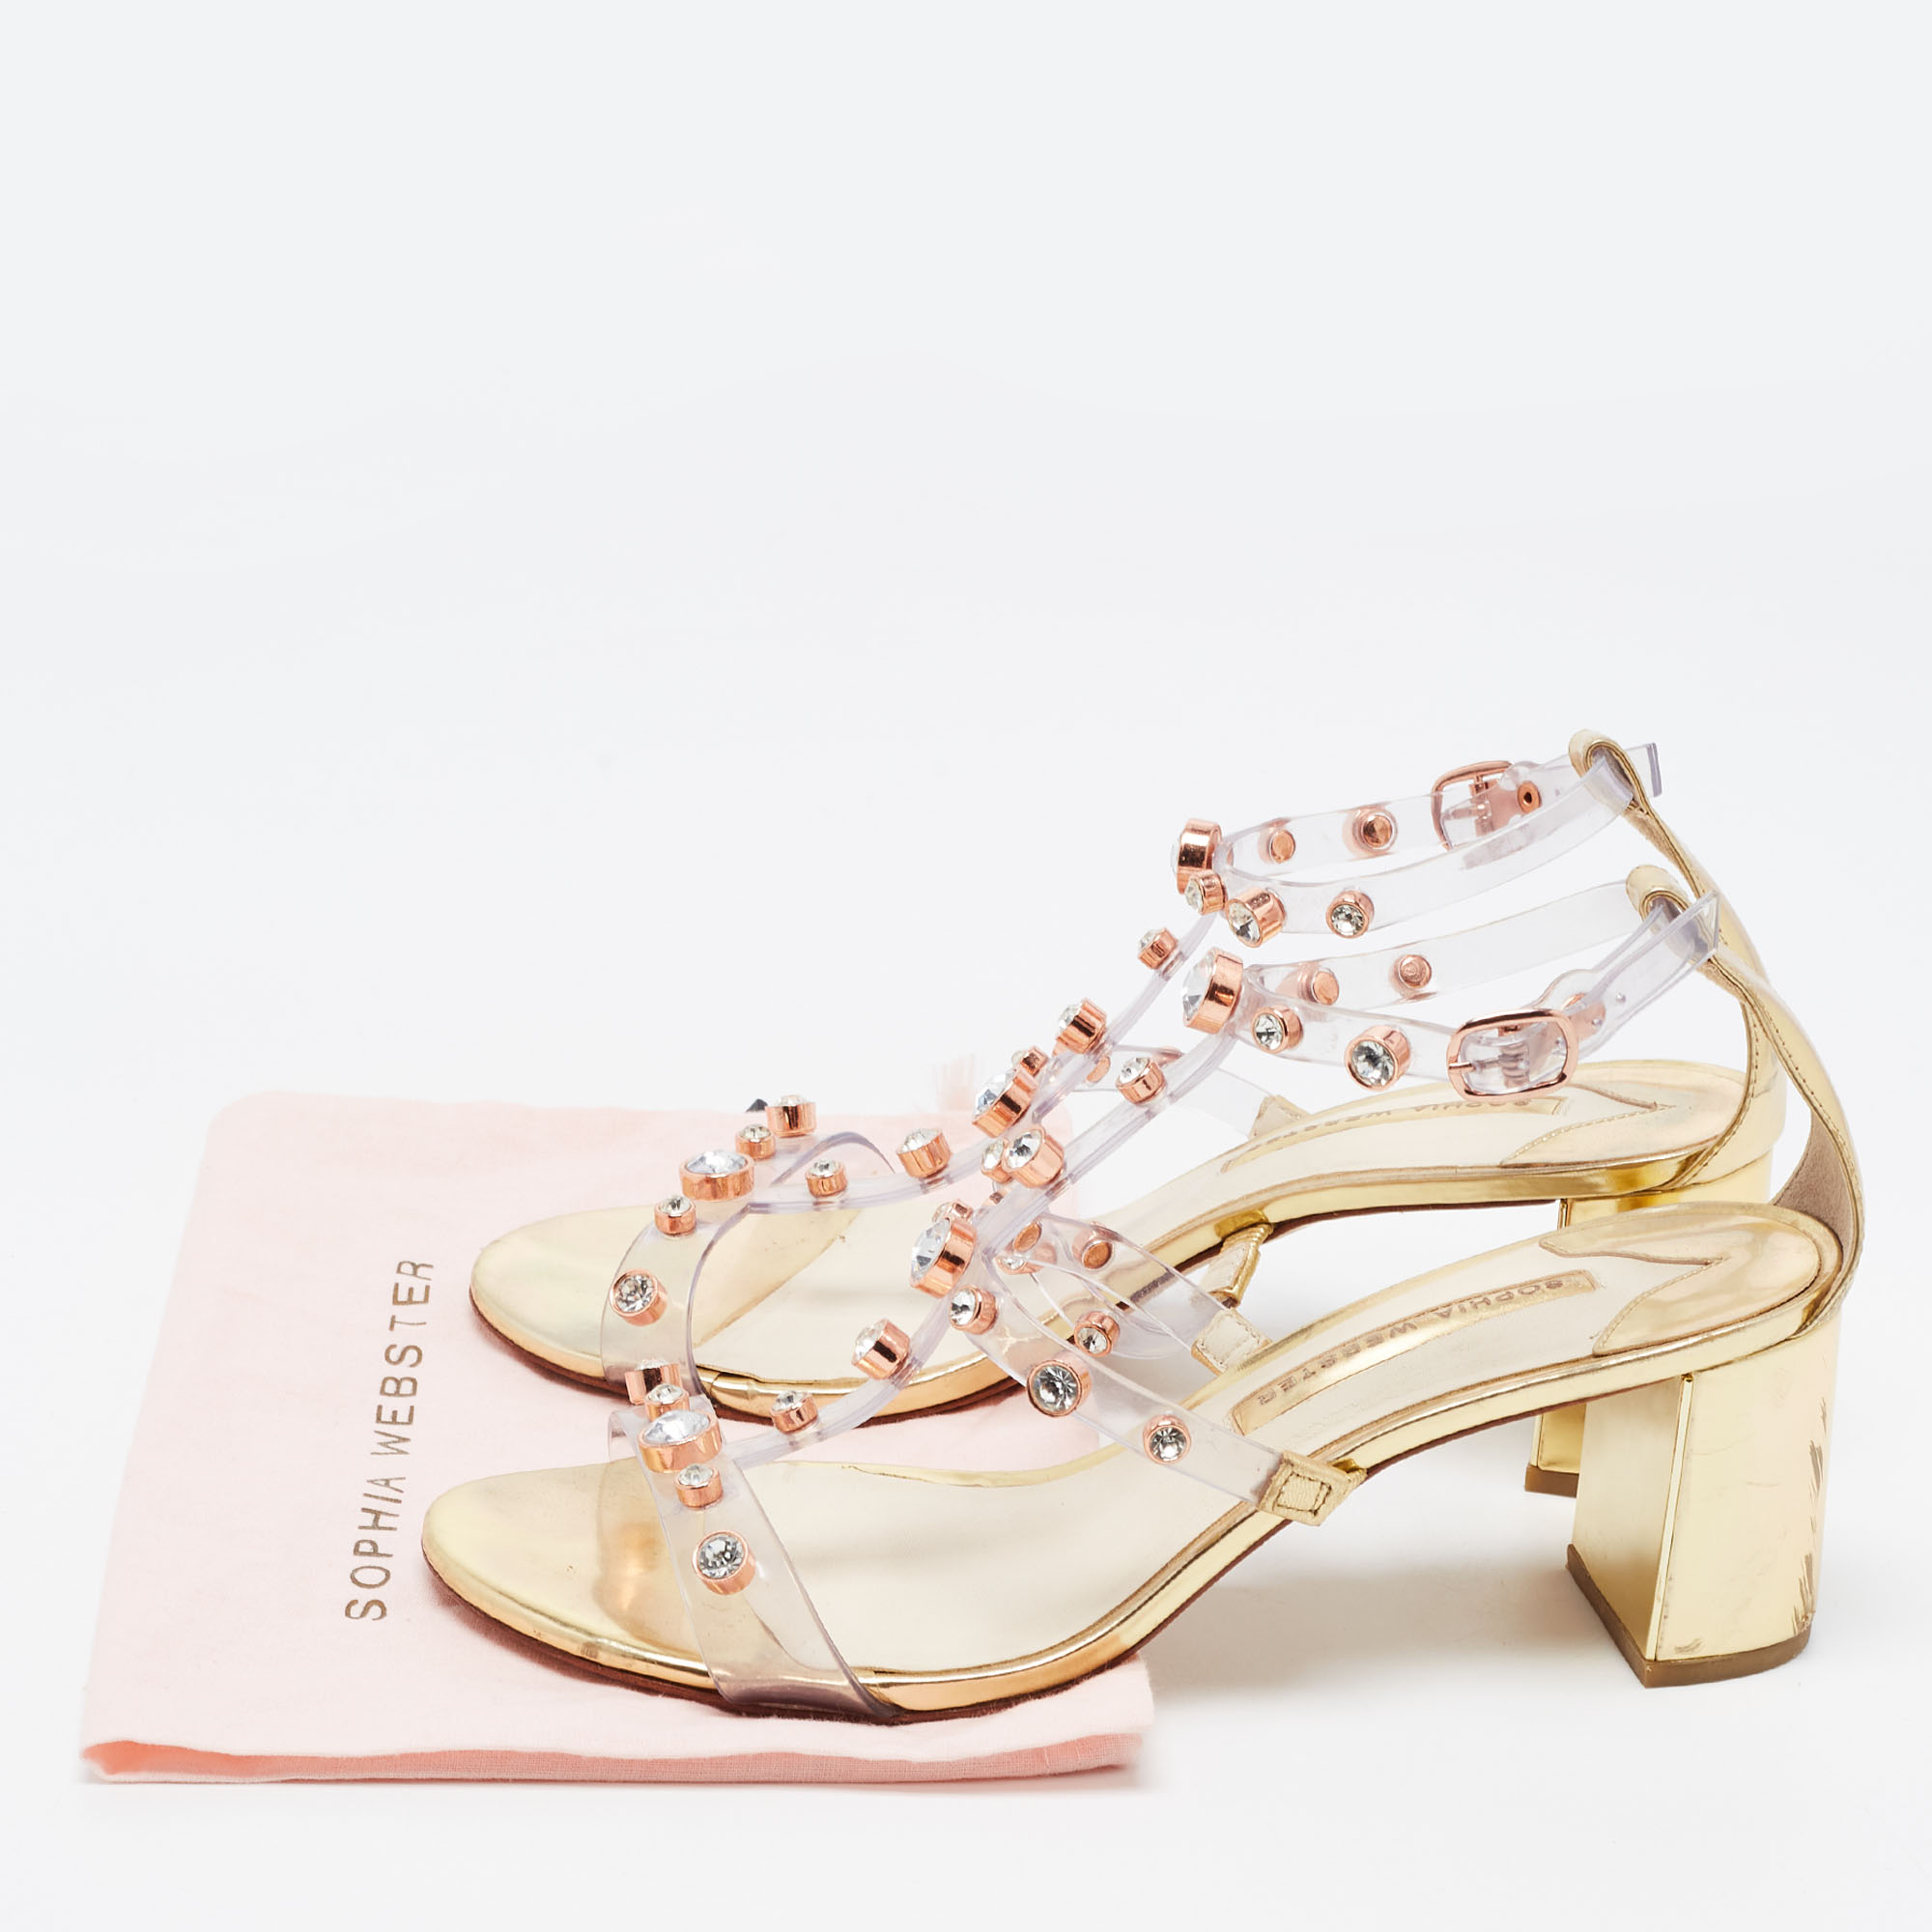 Sophia Webster Metallic Gold/Transparent  Leather And PVC Crystal Embellished Sandals Size 41